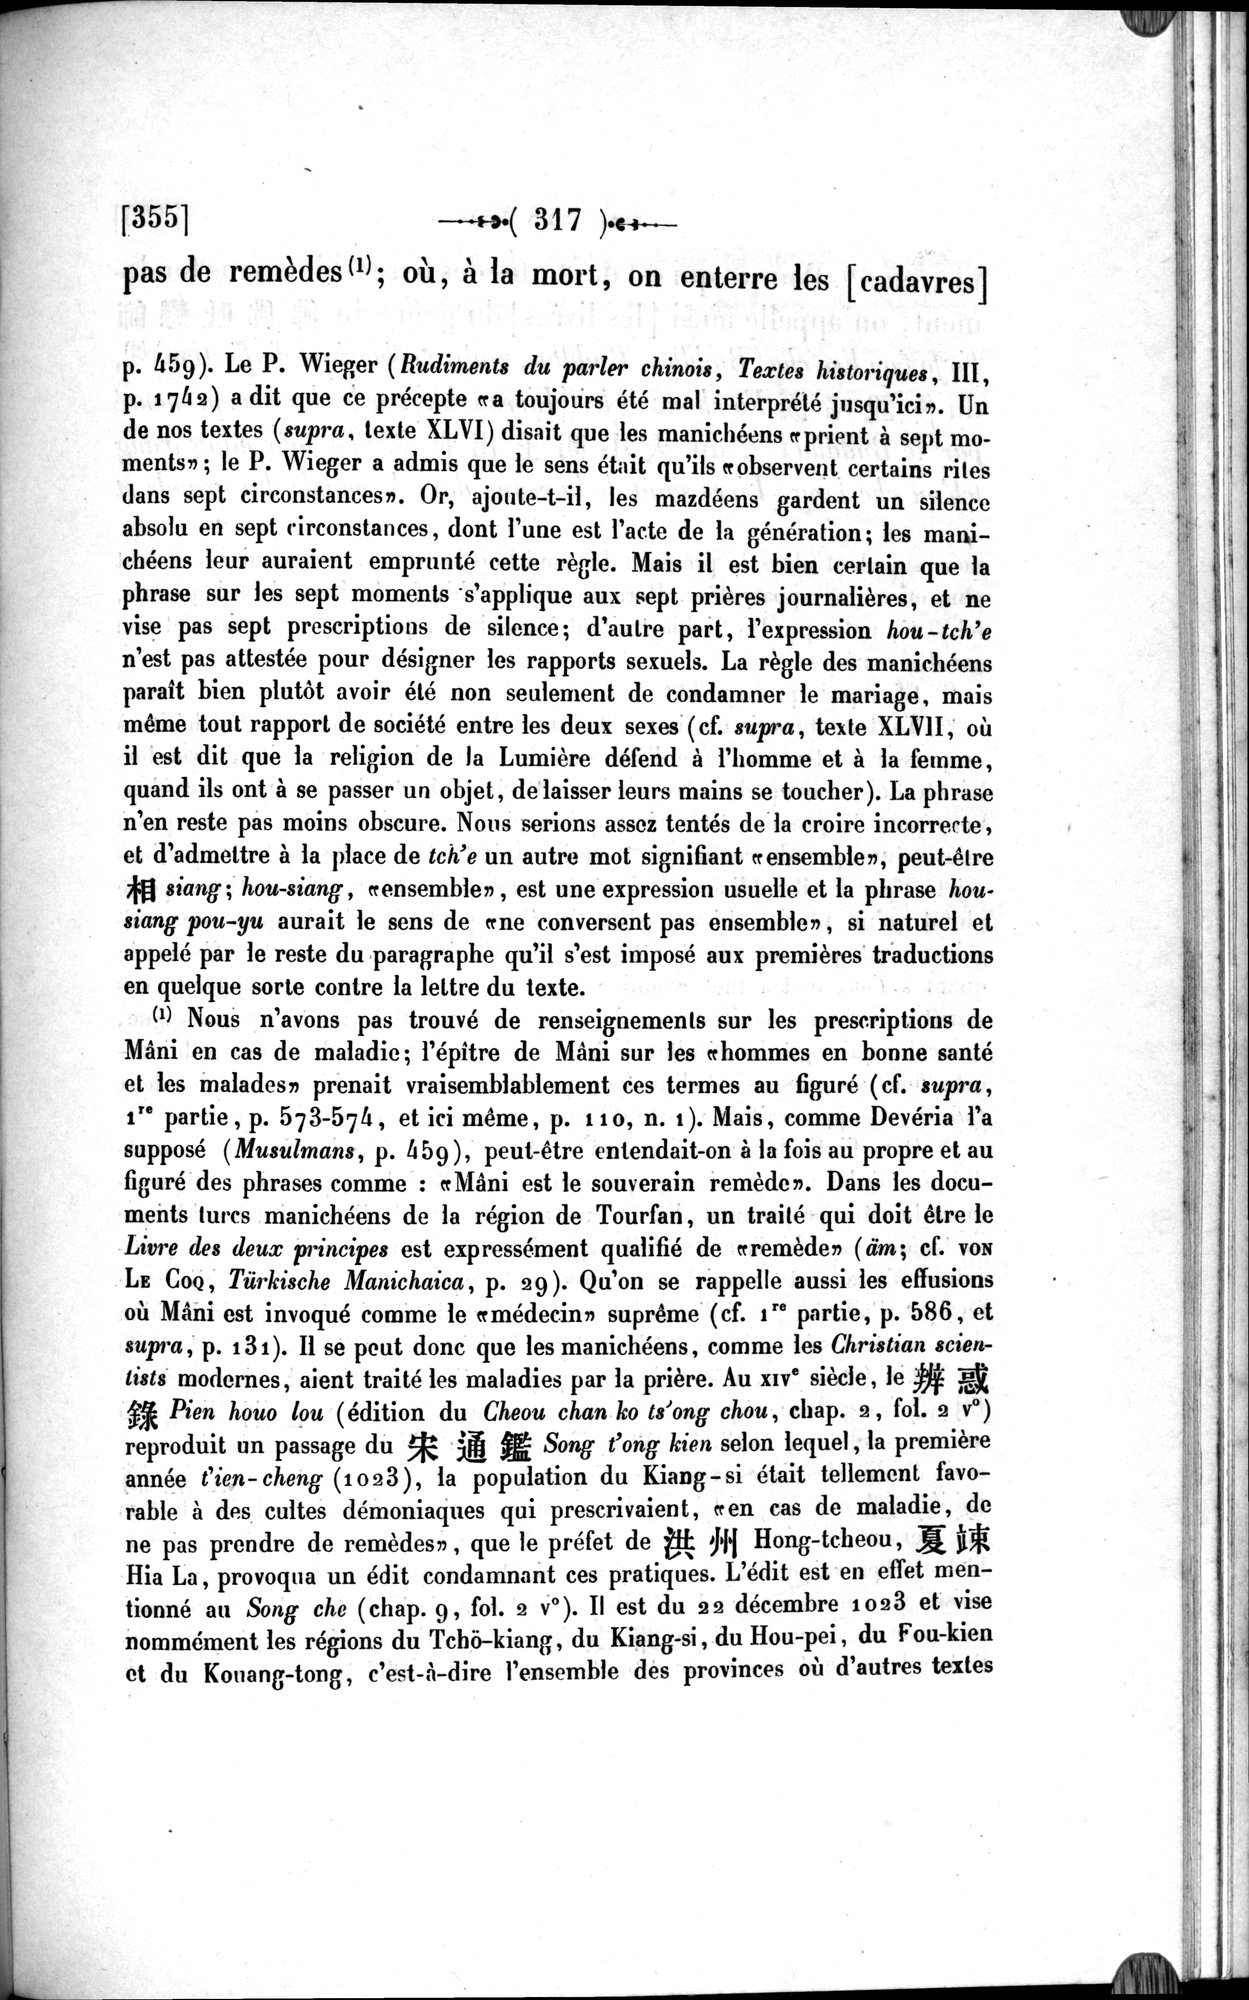 Un traité manichéen retrouvé en Chine : vol.1 / Page 327 (Grayscale High Resolution Image)